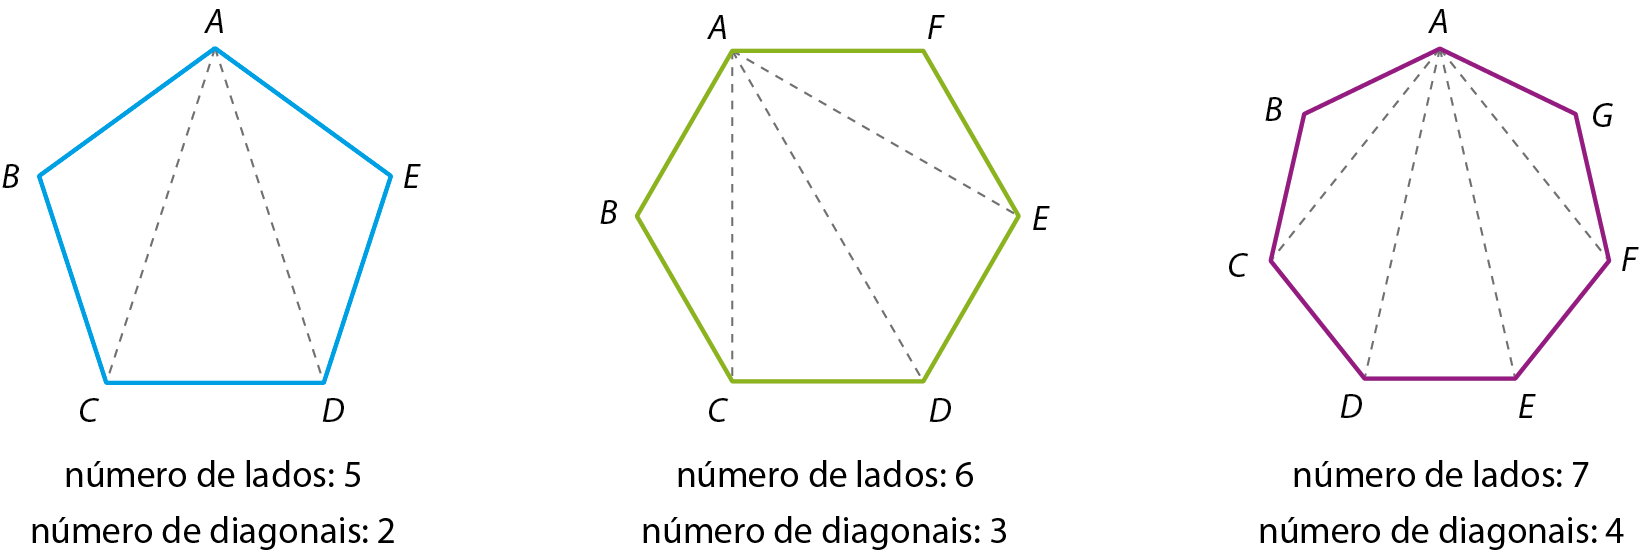 Ilustração. Pentágono A B C D E com duas diagonais traçadas partindo de A. Ilustração.  Pentágono A B C D E com três diagonais traças partindo de A. Ilustração.  Pentágono ABCDE com quatro diagonais traçadas partindo de A.